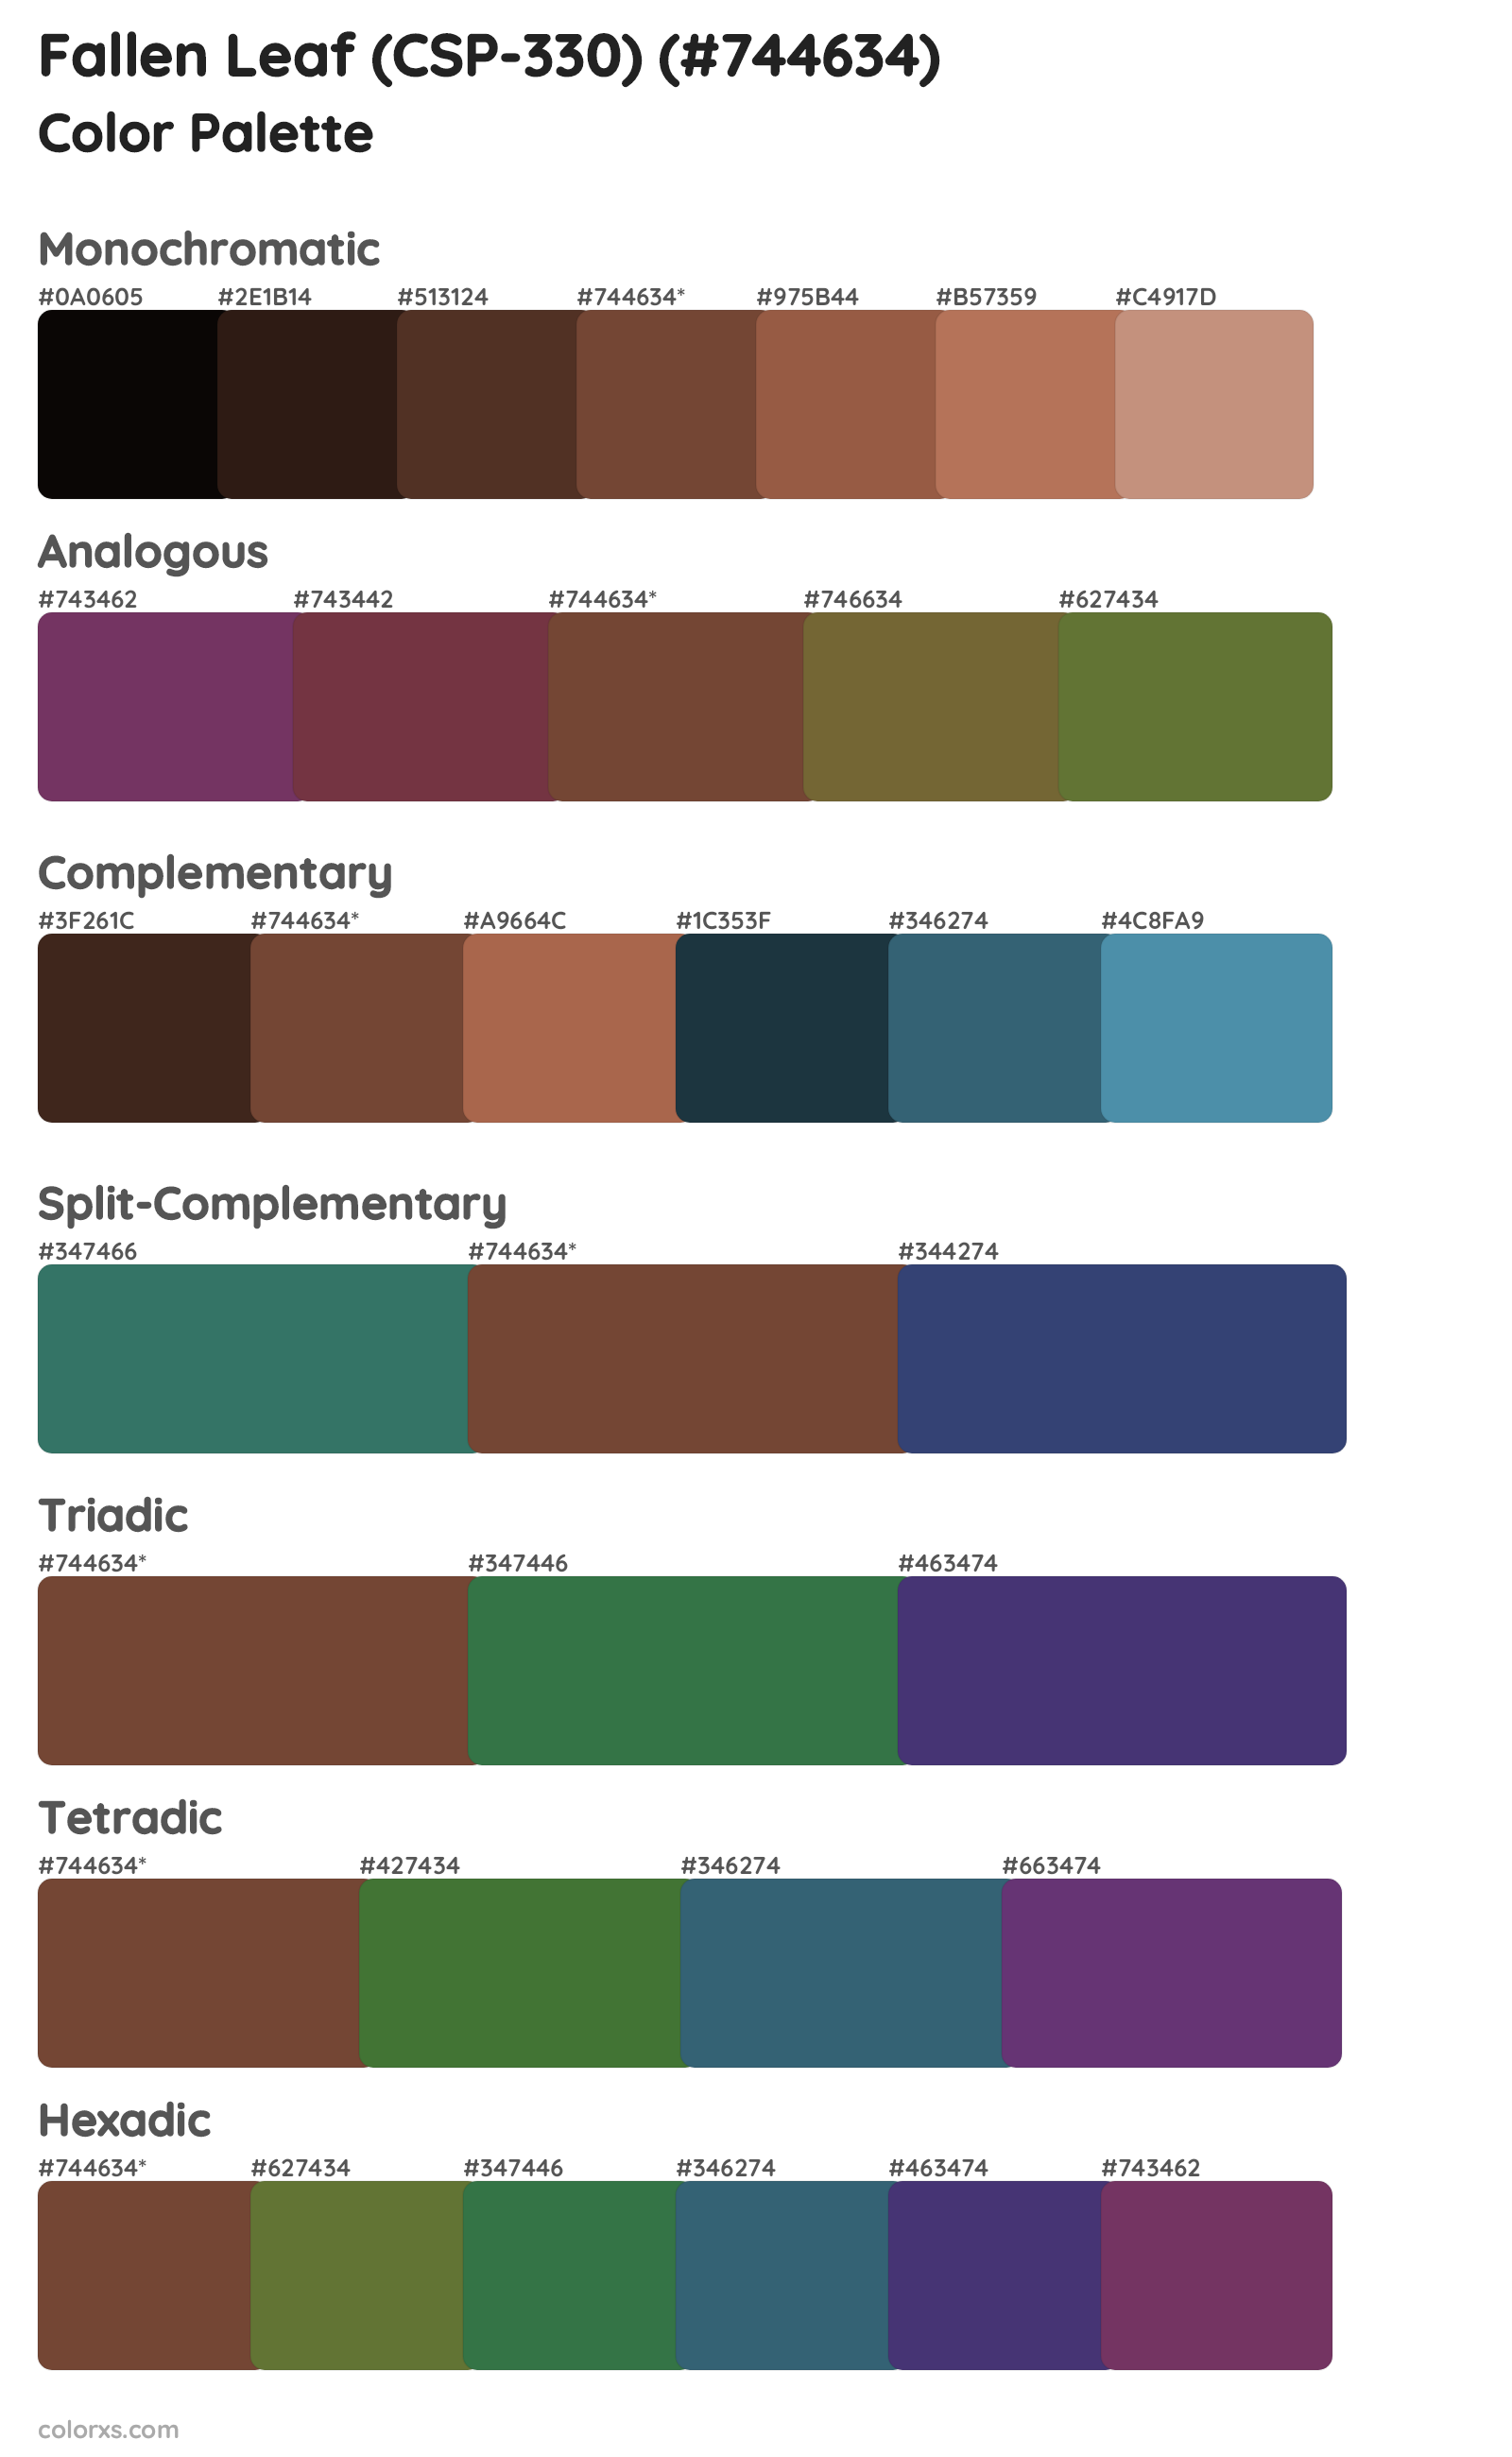 Fallen Leaf (CSP-330) Color Scheme Palettes